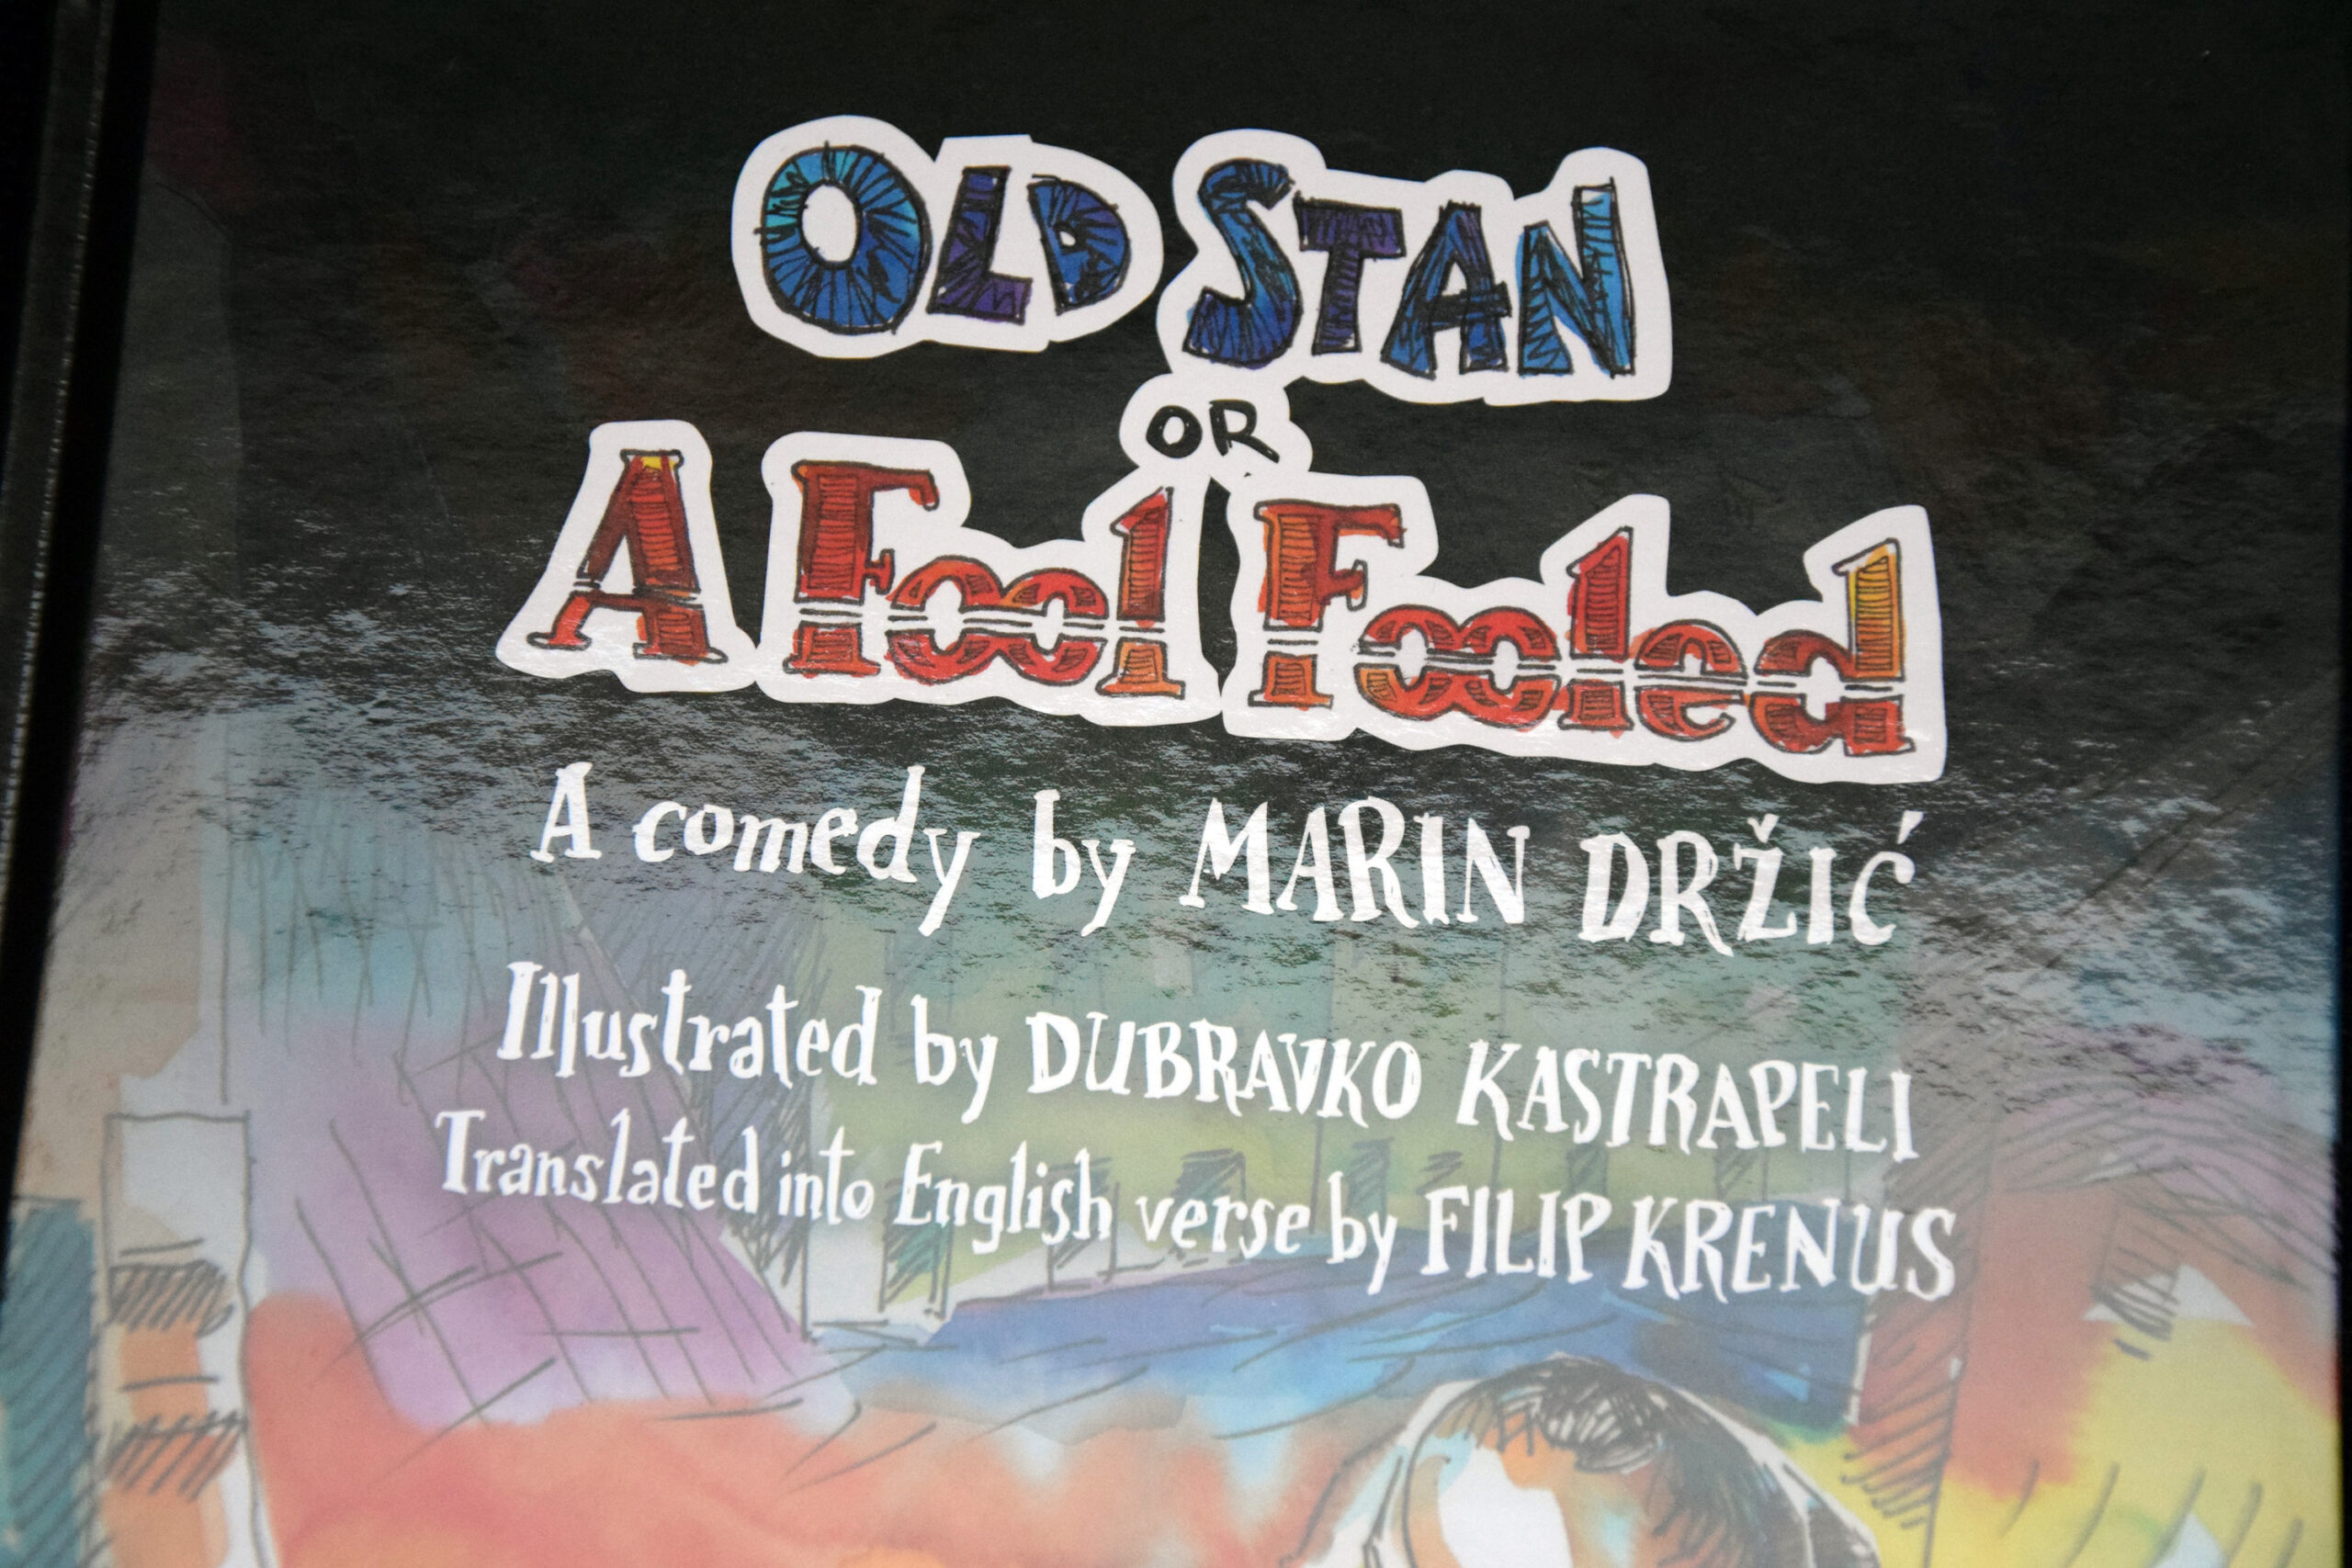 Naslovnica knjige "Old Stan or A Fool Fooled", komedija Marina Držića. Ilustracije je izradio Dubravko Kastrapeli, a engleski prijevod u stihovima je napravio Filip Krenus.